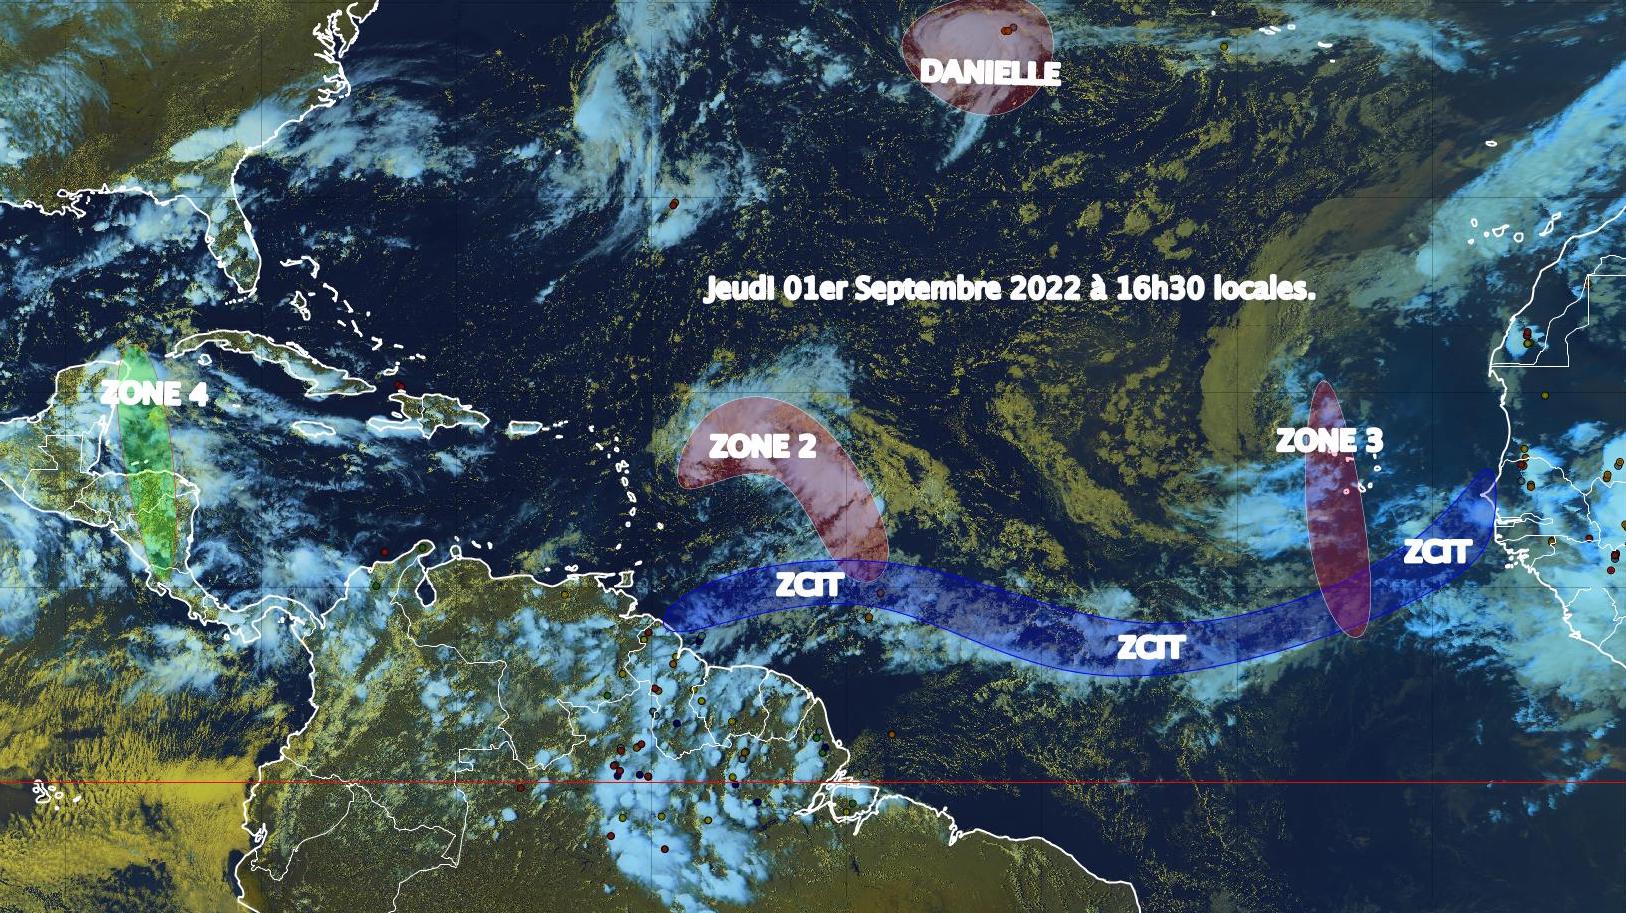     La tempête tropicale Danielle ne menace pas les Antilles

